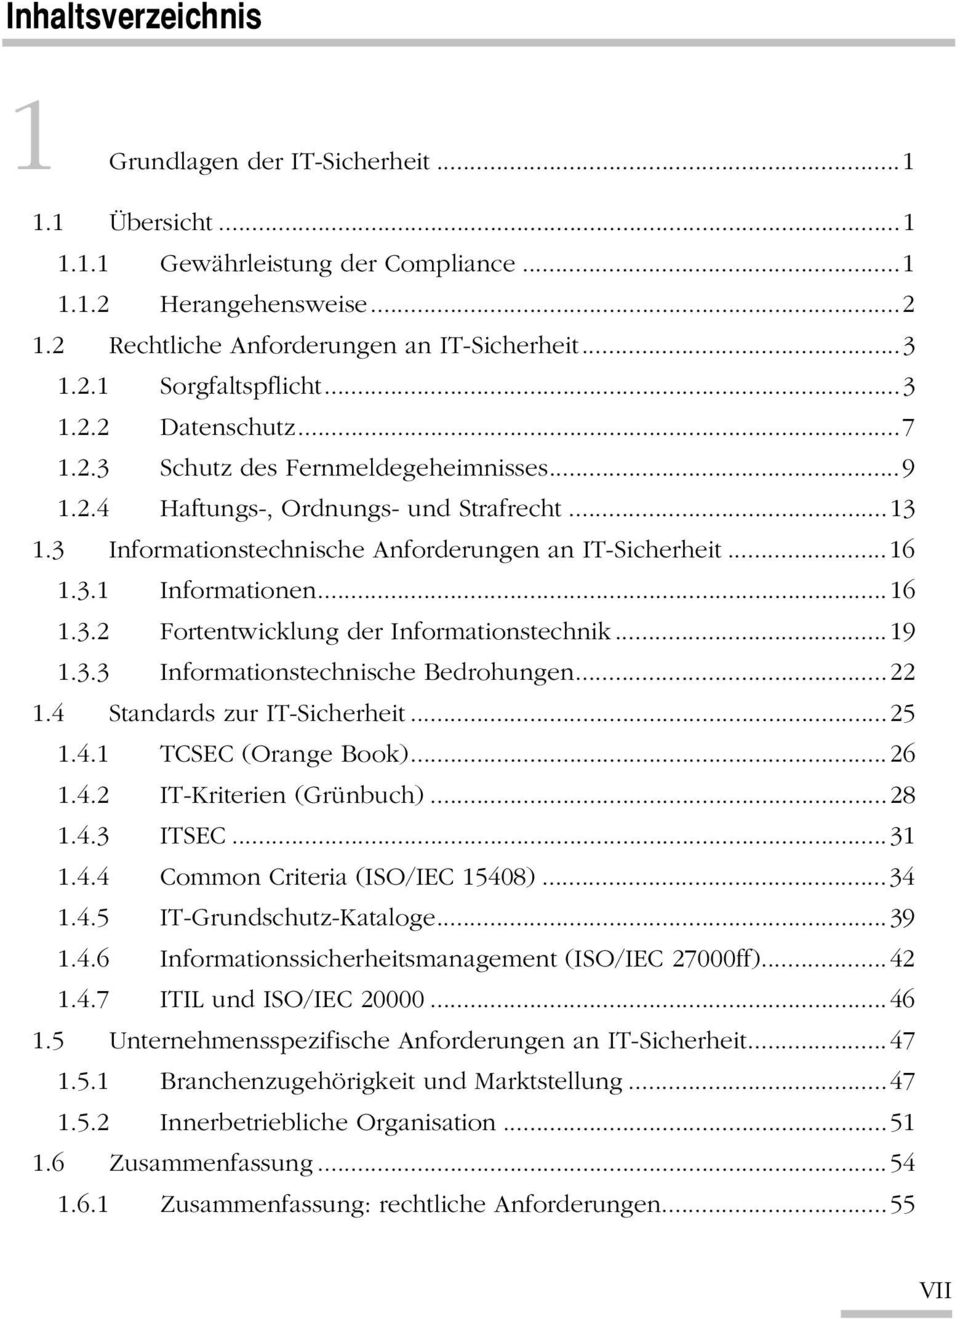 ..16 1.3.2 Fortentwicklung der Informationstechnik...19 1.3.3 Informationstechnische Bedrohungen...22 1.4 Standards zur IT-Sicherheit...25 1.4.1 TCSEC (Orange Book)...26 1.4.2 IT-Kriterien (Grünbuch).